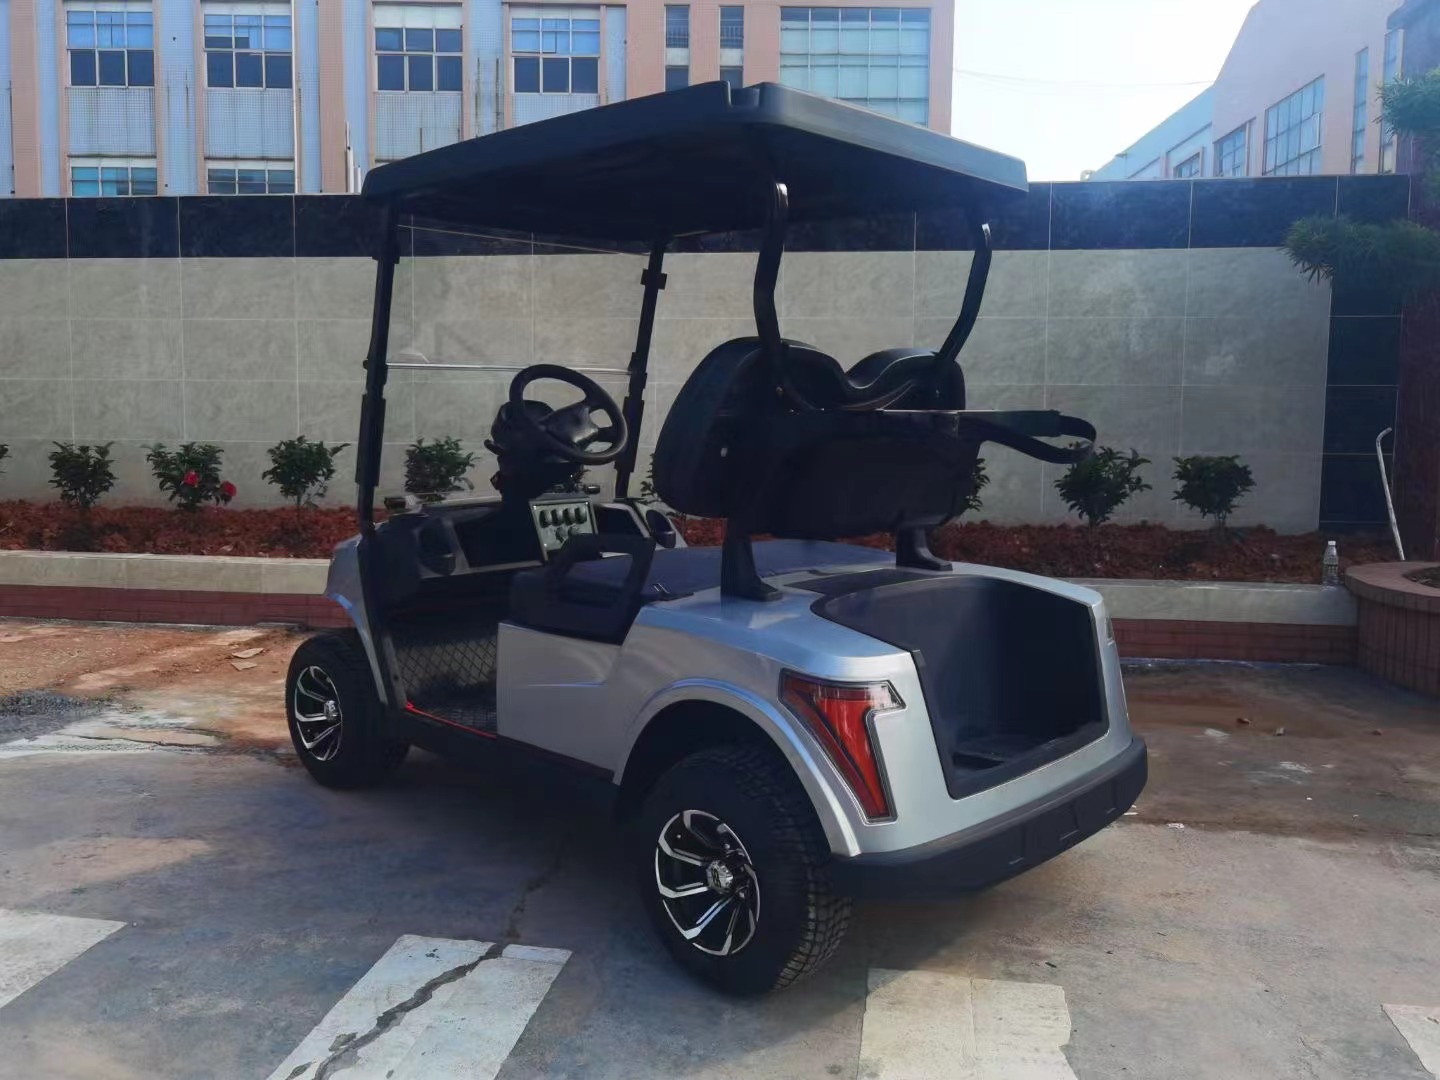 HXDR2+2 golf cart